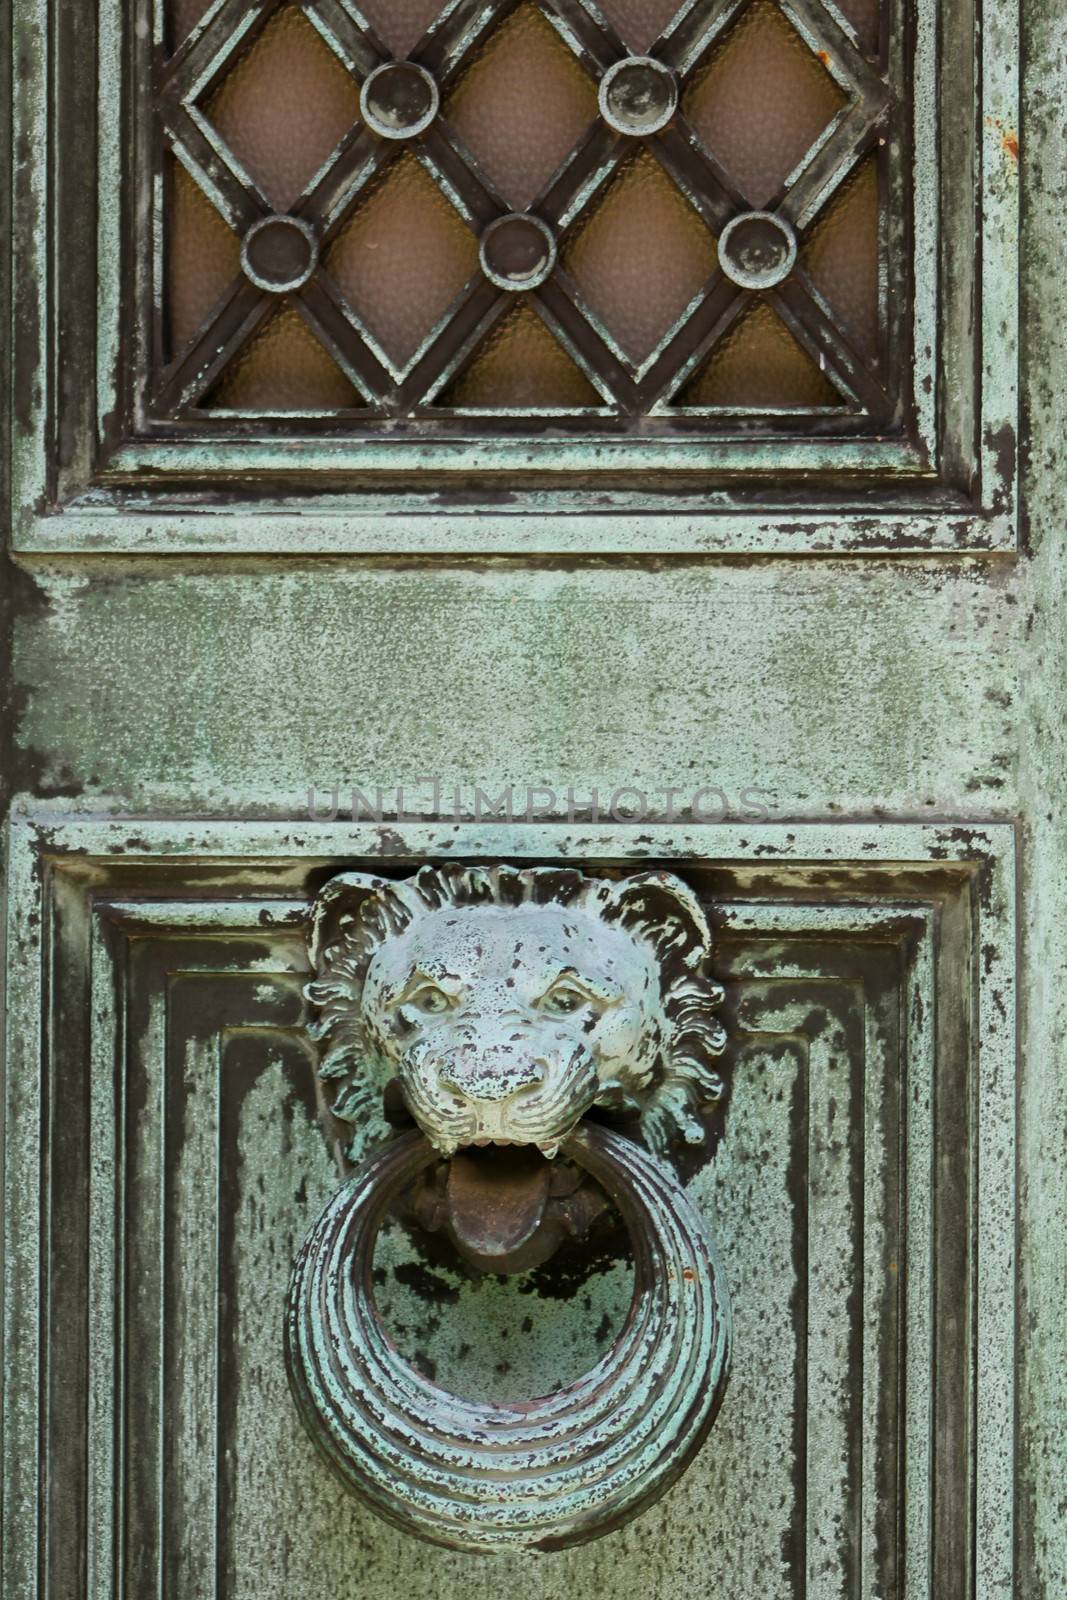 Lion Head Door Knocker by mpk1970